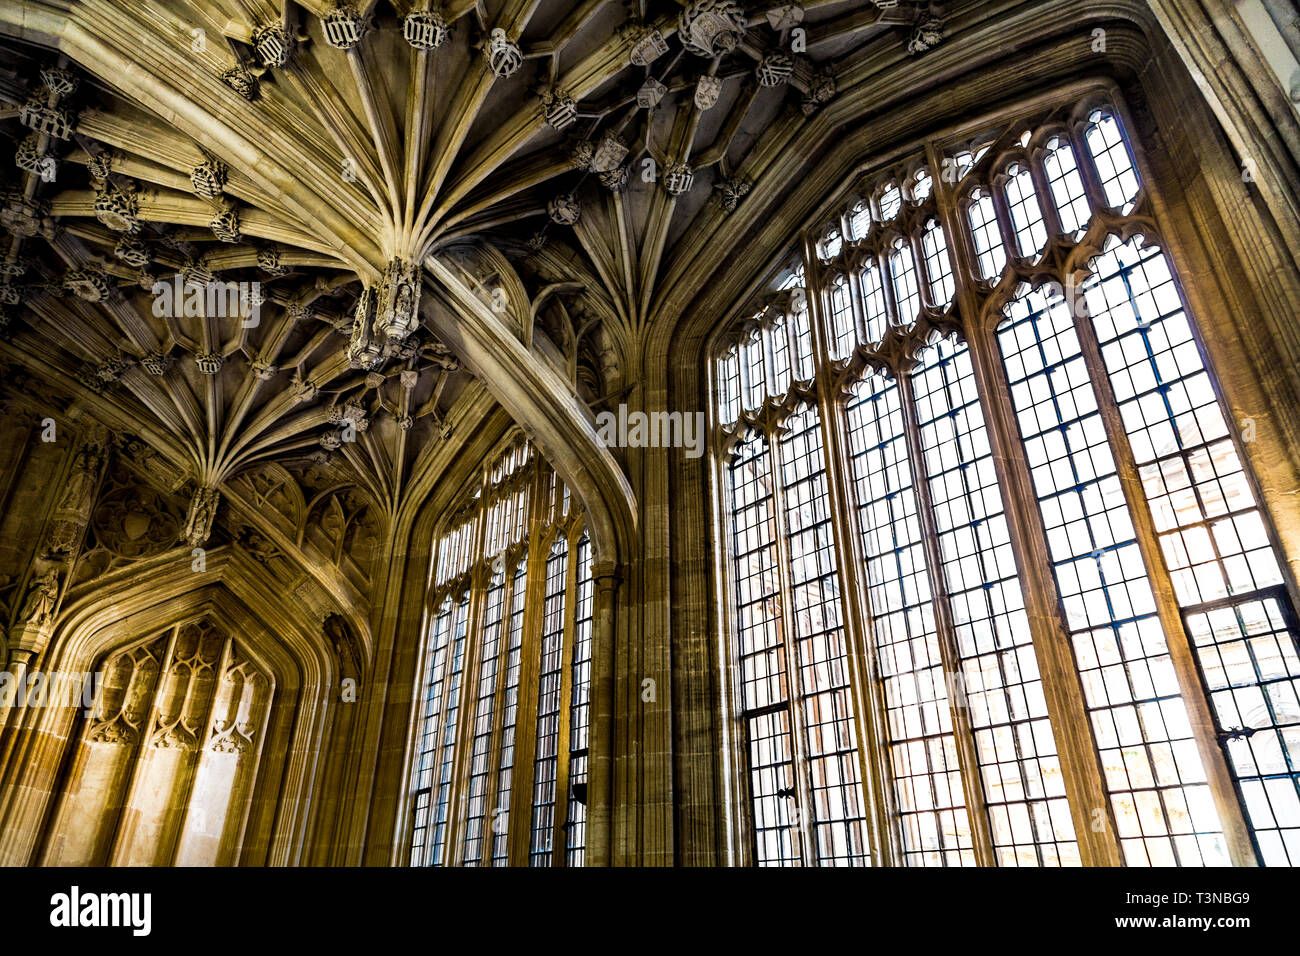 Plafond voûté et windows dans une cité médiévale de l'intérieur de la Divinity School à Oxford, UK Banque D'Images